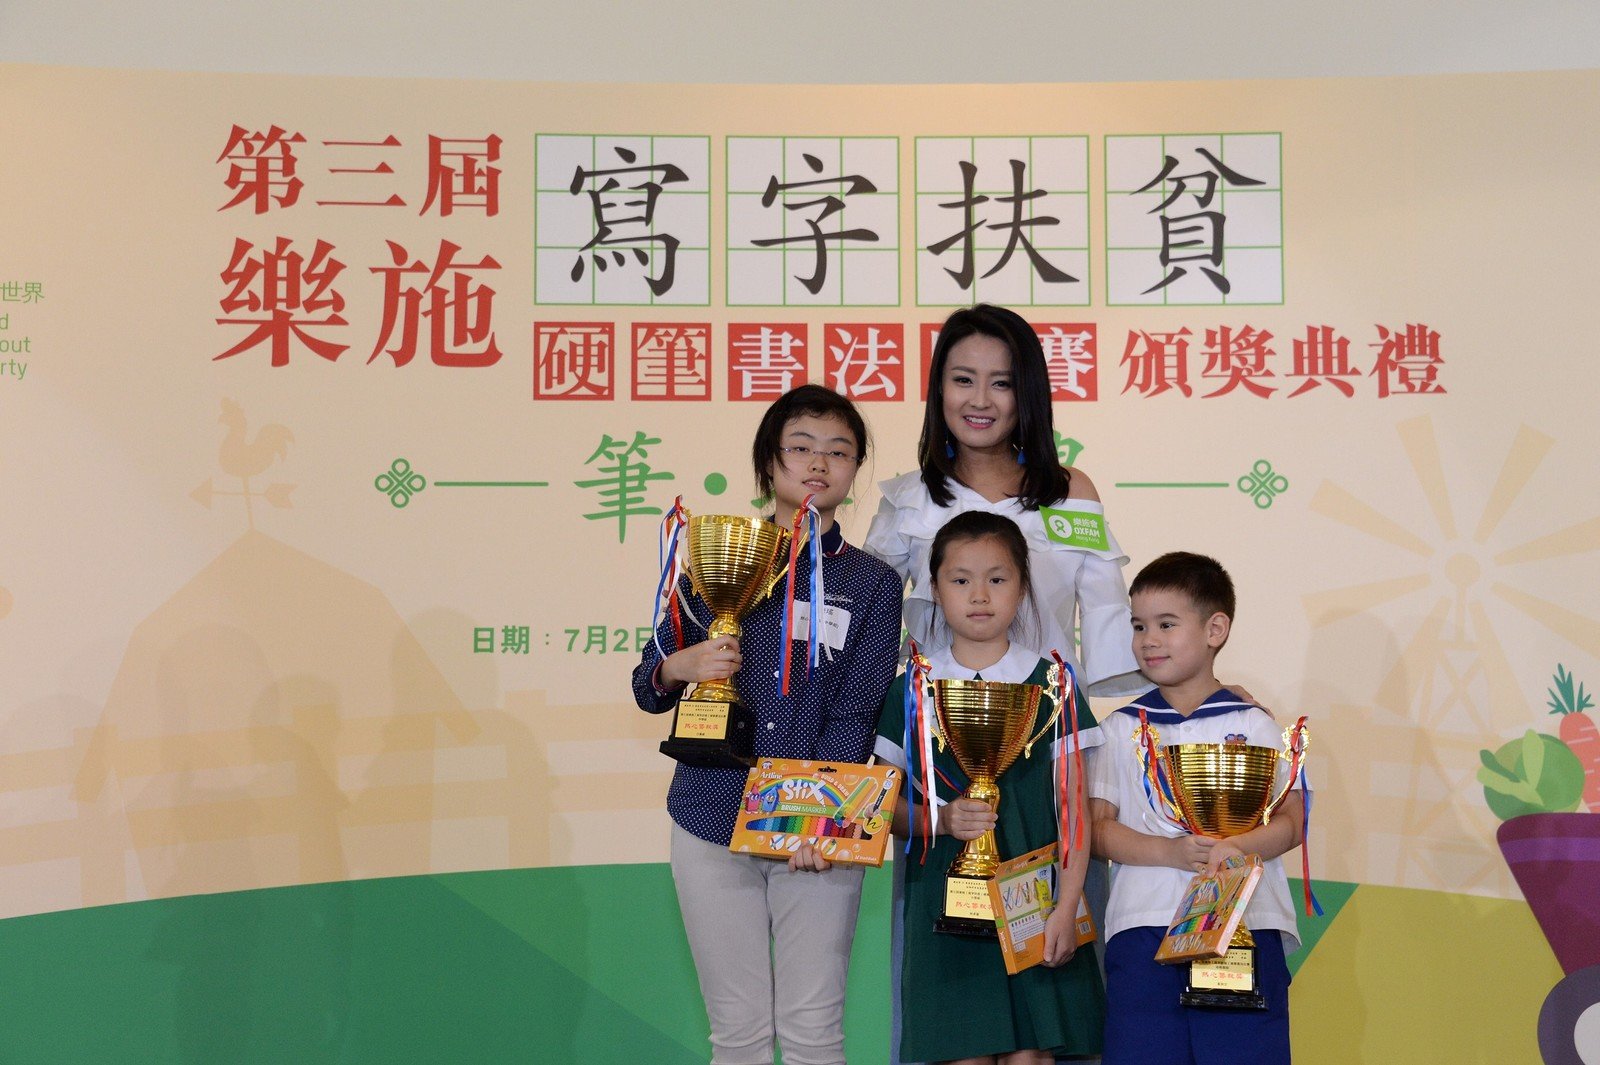 演藝名人陳倩揚頒發籌款獎予今次活動熱心籌款的同學們。